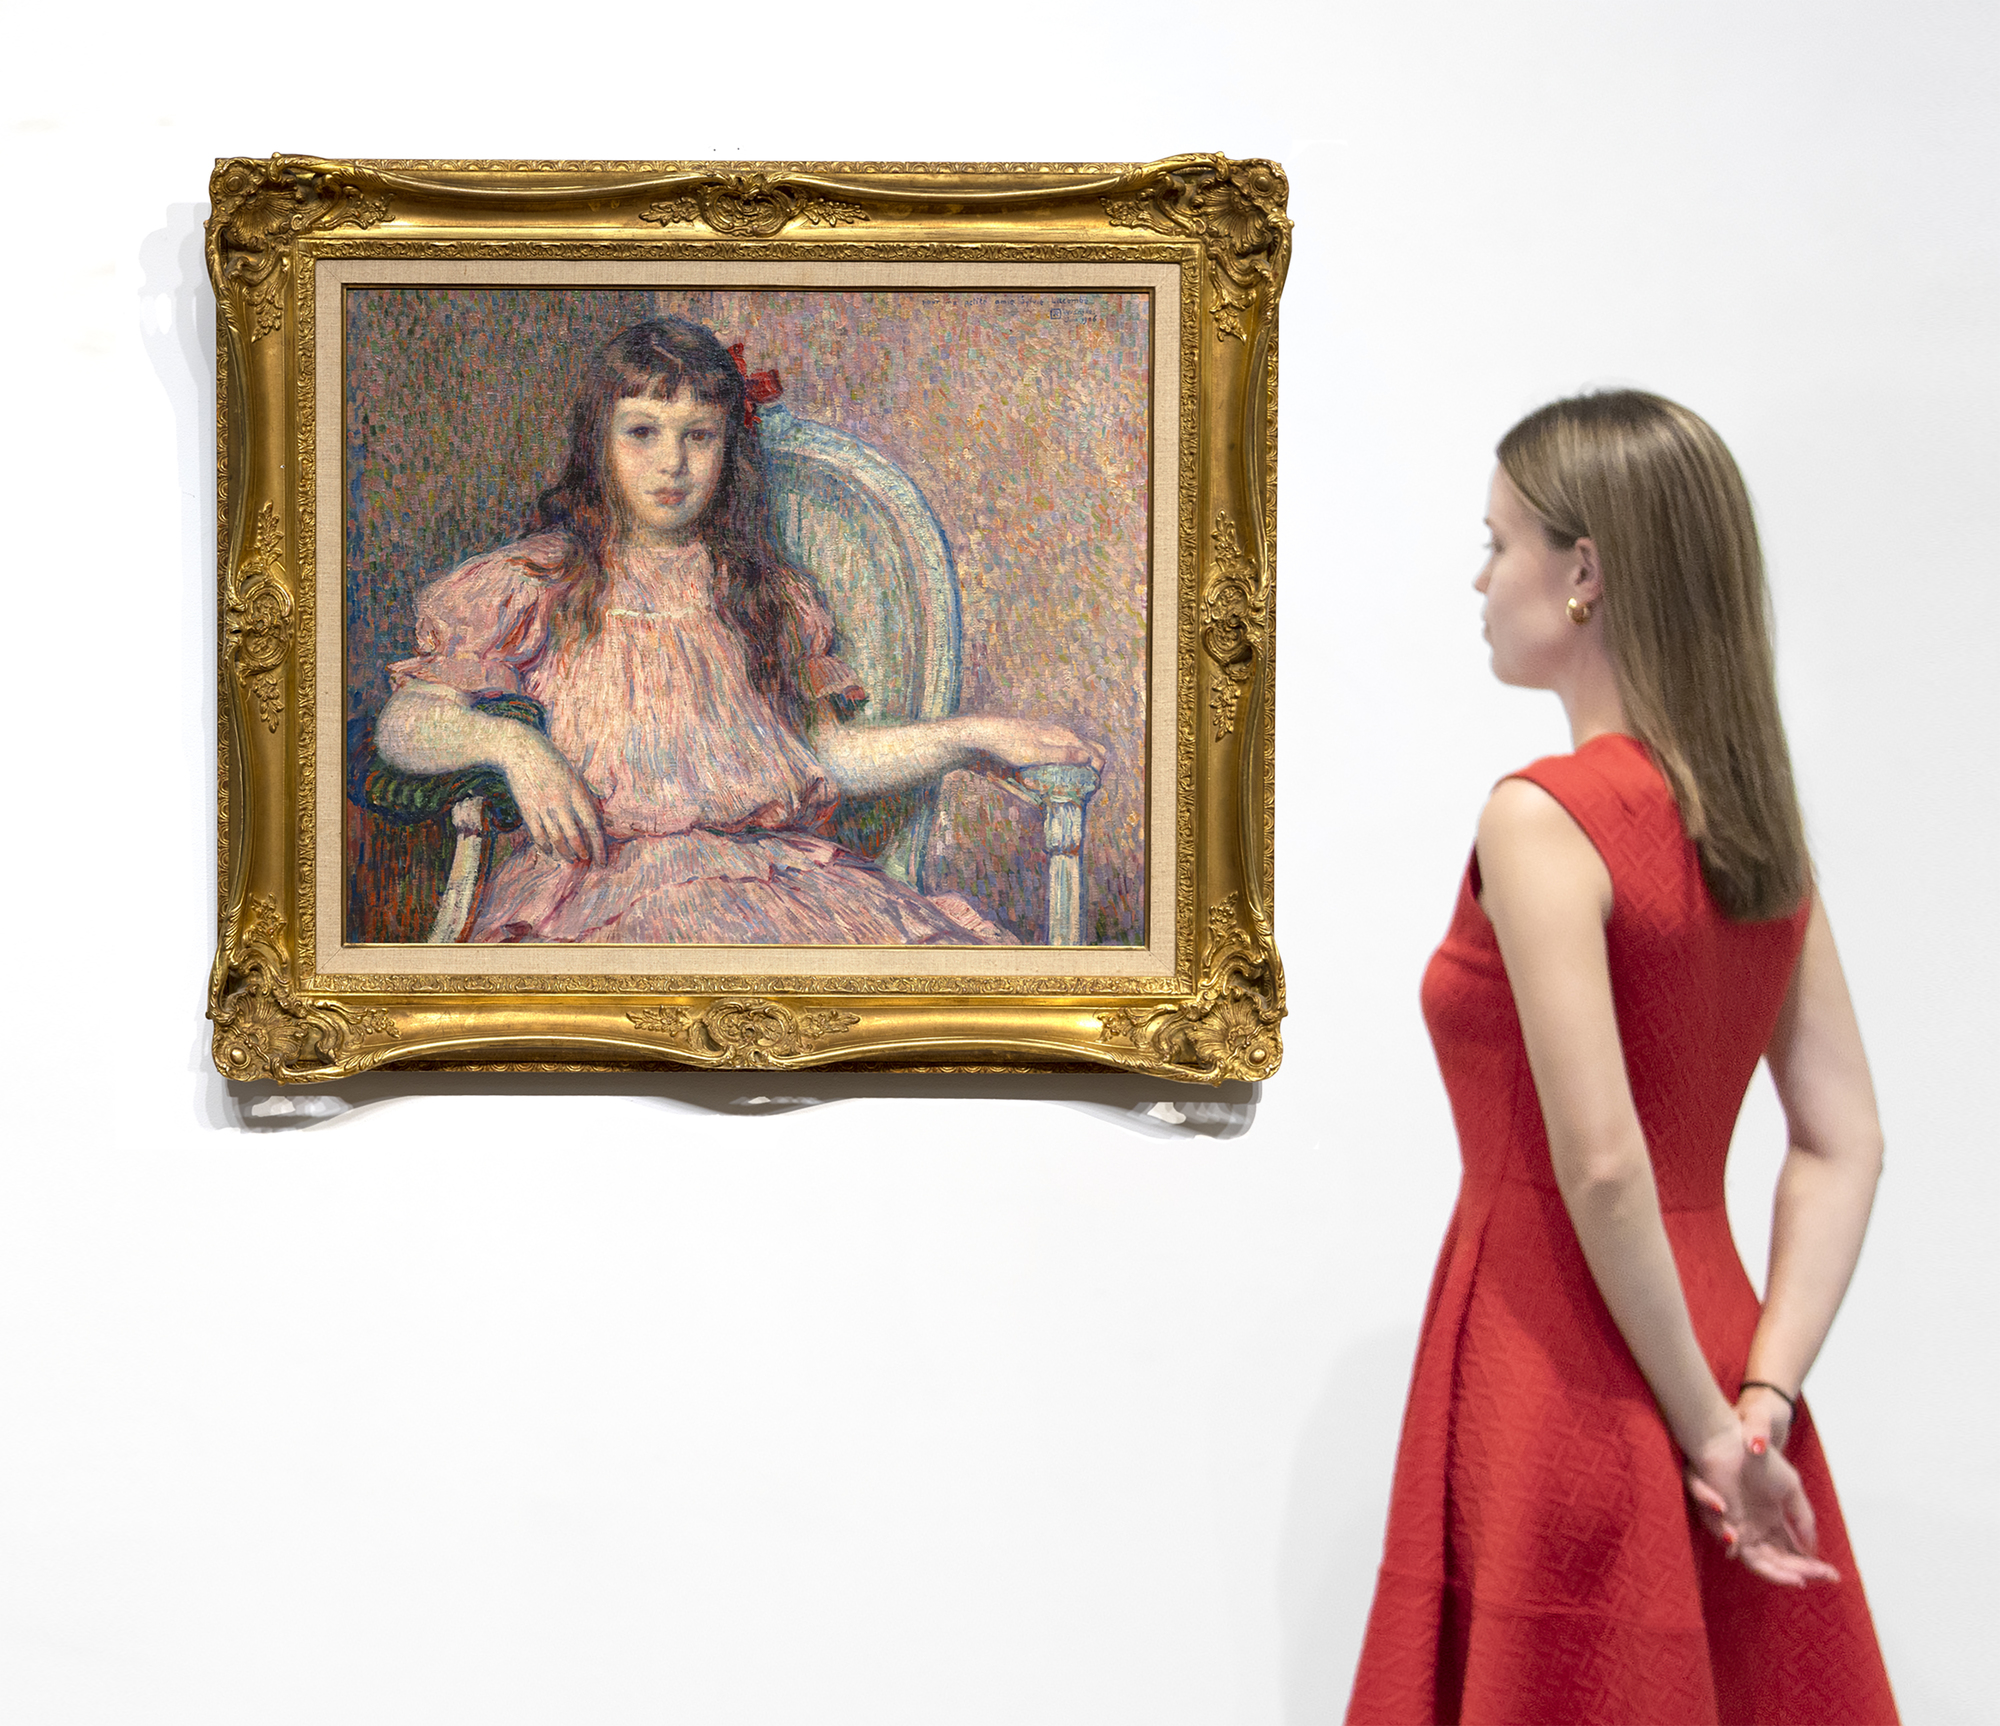 Théo van Rysselberghes Portrait de Sylvie Lacombe aus dem Jahr 1906 ist ein klassisches Meisterwerk eines der raffiniertesten und konsequentesten Porträtmaler seiner Zeit. Die Farben sind harmonisch, der Pinselstrich kraftvoll und auf seine Aufgabe zugeschnitten, Körper und Antlitz wahrhaftig und freizügig. Bei der Dargestellten handelt es sich um die Tochter seines guten Freundes, des Malers Georges Lacombe, der eng mit Gauguin befreundet war und mit den Künstlern Bonnard, Denis, Vuillard u. a. zu den Nabis gehörte. Wir wissen jetzt über Sylvie Lacombe Bescheid, weil Van Rysselberghe so geschickt darin ist, subtile Gesichtsausdrücke wiederzugeben und durch sorgfältige Beobachtung und Liebe zum Detail Einblicke in ihre innere Welt zu geben. Er wählte einen direkten Blick, ihre Augen auf die des Betrachters, eine unausweichliche Verbindung zwischen Subjekt und Betrachter, unabhängig von unserer physischen Beziehung zum Bild. Van Rysselberghe hatte die pointillistische Technik weitgehend aufgegeben, als er dieses Porträt malte. Er wandte jedoch weiterhin die Richtlinien der Farbtheorie an, indem er Rottöne - Rosatöne und Mauvetöne - gegen Grüntöne einsetzte, um eine harmonisch abgestimmte Palette von Komplementärfarben zu schaffen, denen er einen starken Akzent hinzufügte, um den Blick auf sich zu ziehen - eine intensiv gesättigte, rote Schleife, die asymmetrisch an der Seite ihres Kopfes angebracht ist.